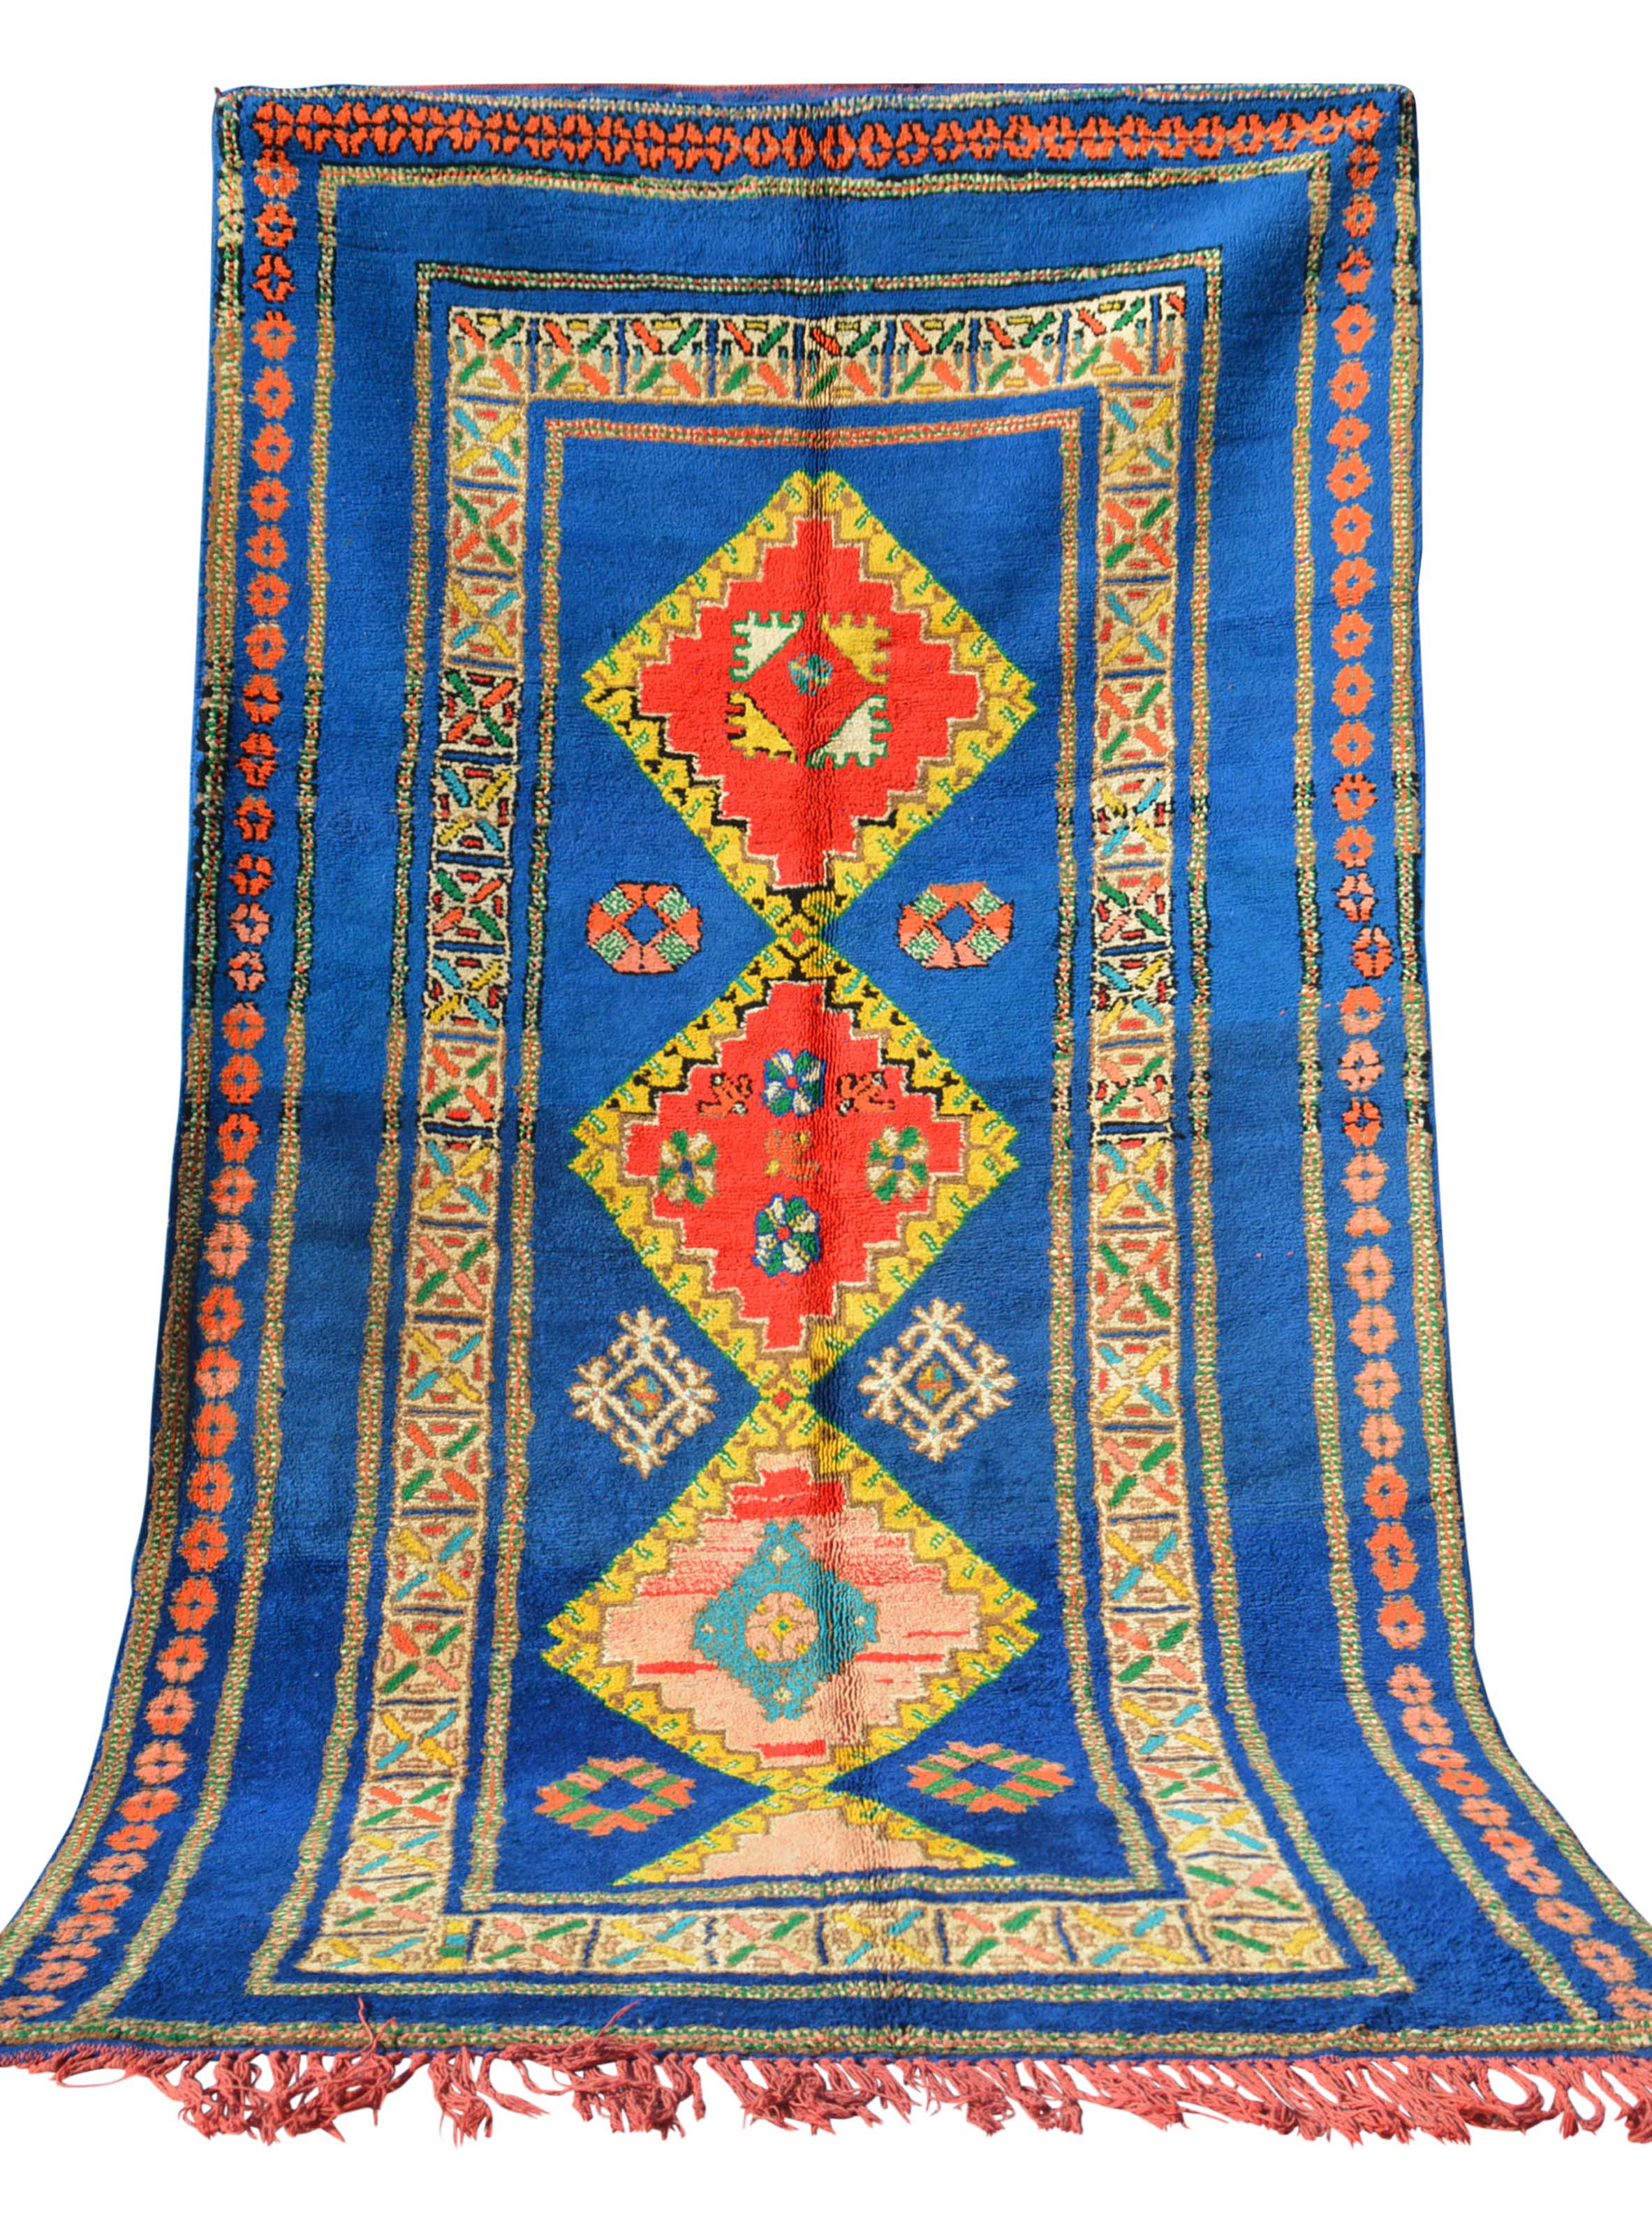 Vintage Moroccan Rug Vintage Bohemian Blue Rugs for Sale – Buy Vintage Bohemian Rugs Online - Illuminate Collective Rugs illuminate collective